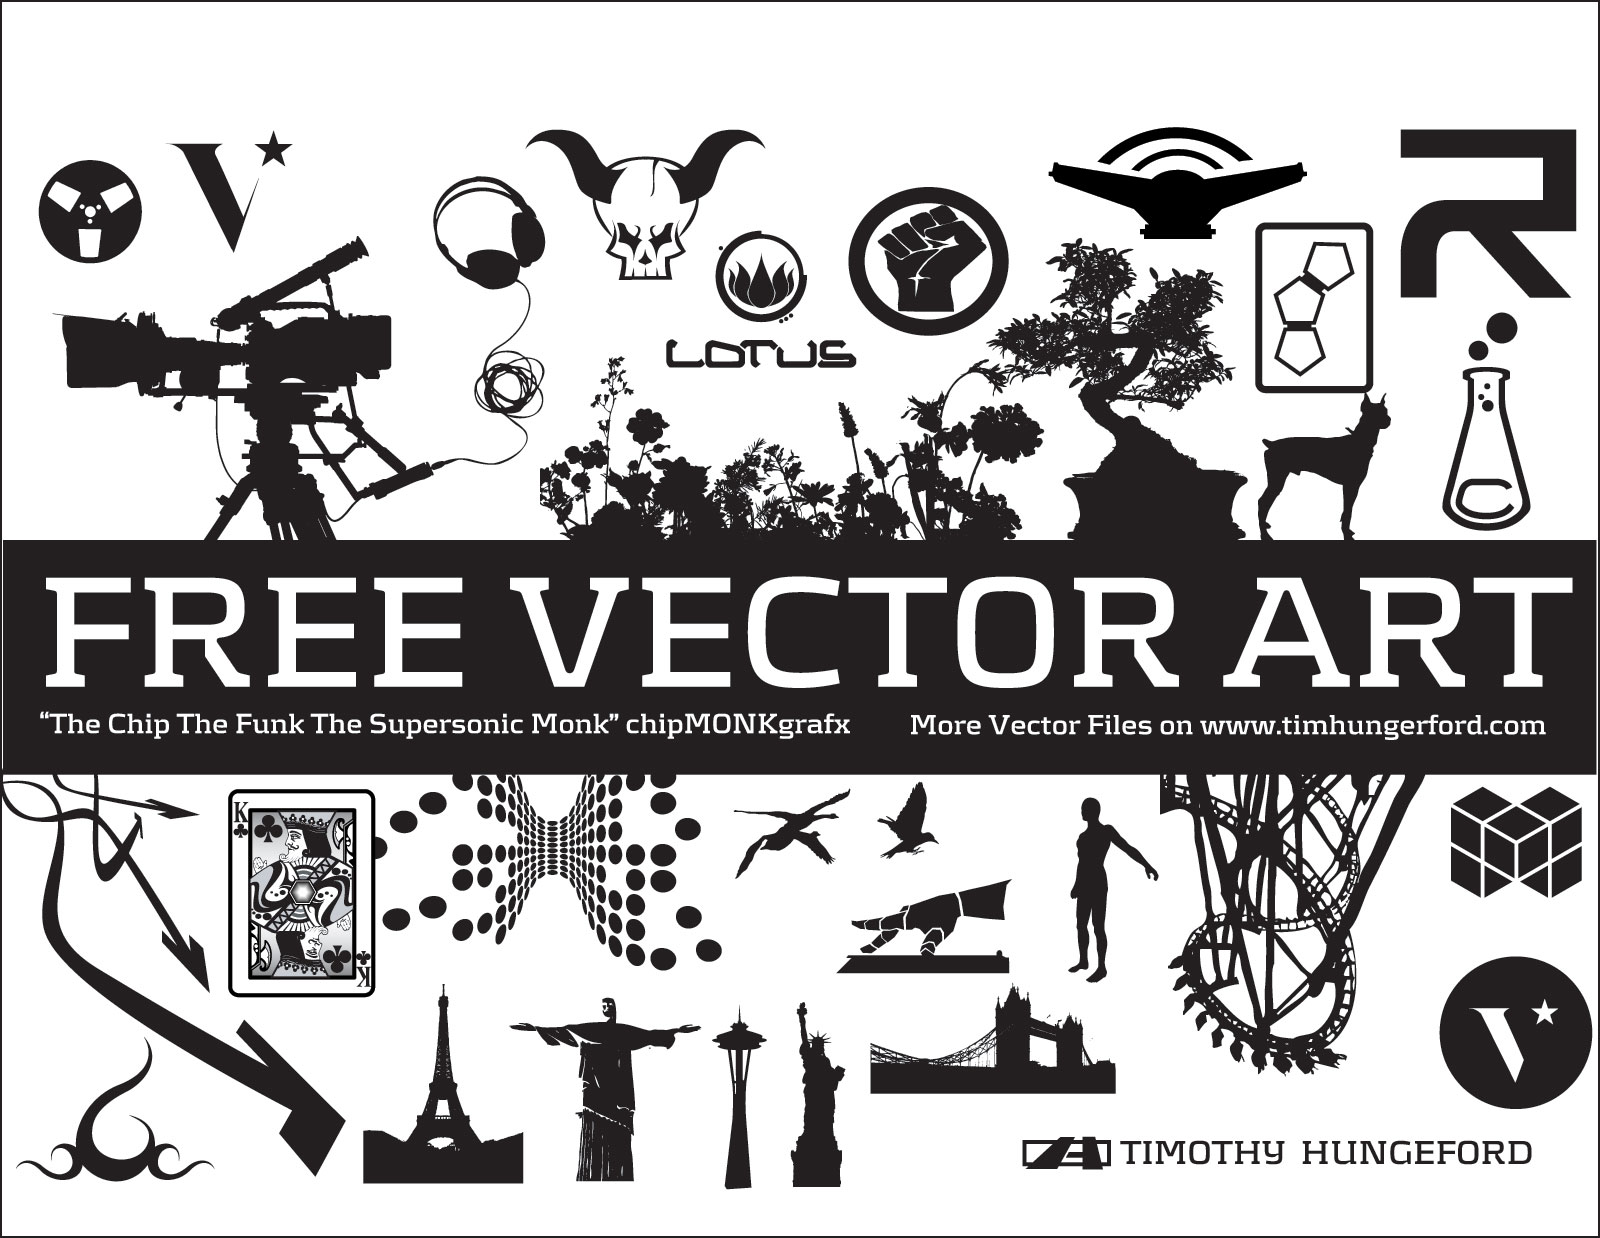 Free Vector Art Downloads